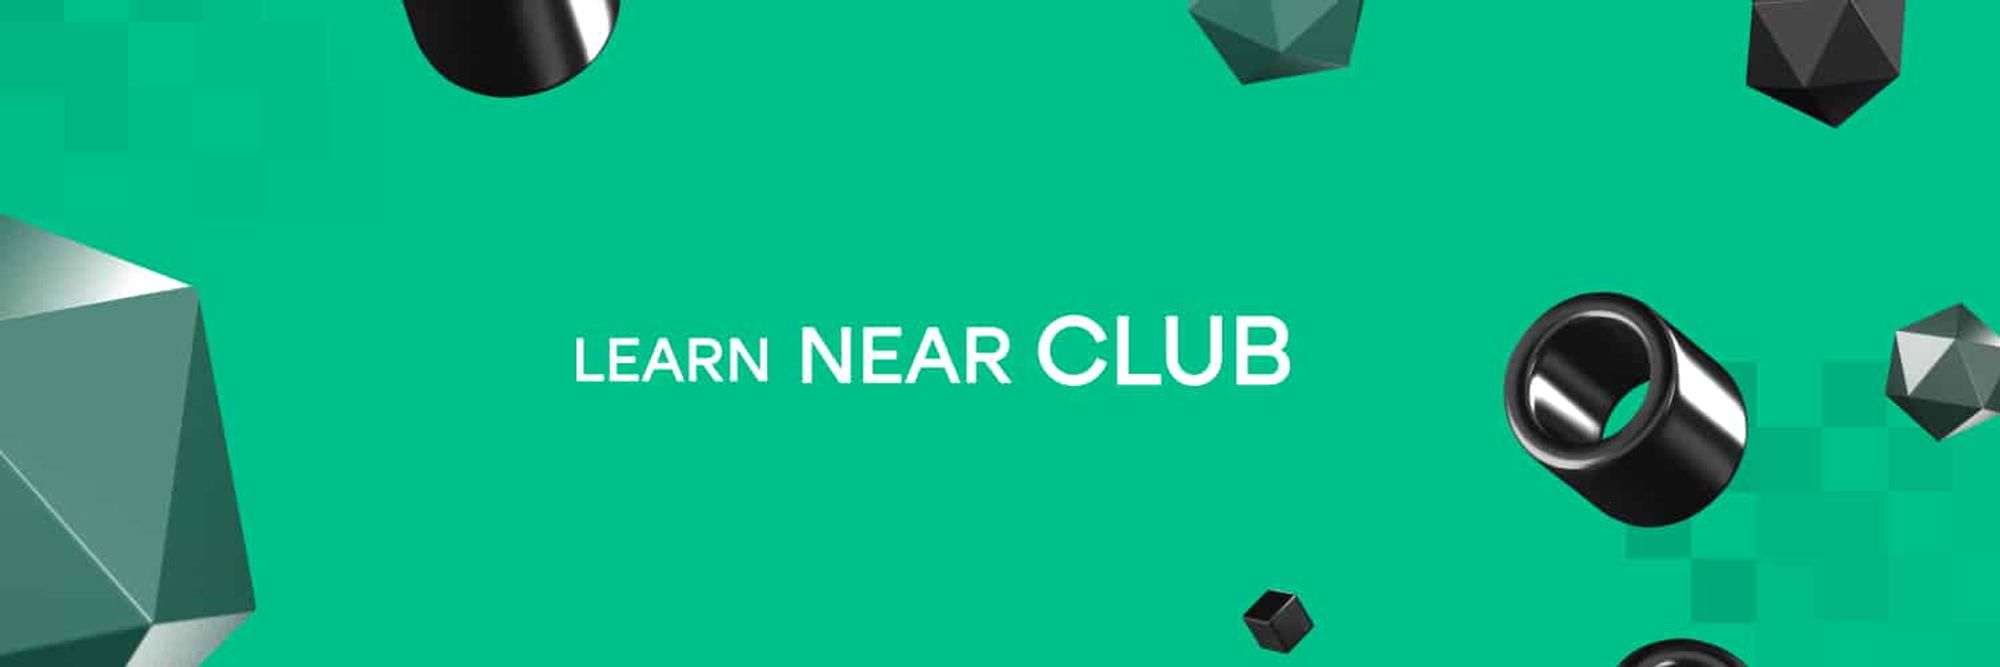 Learn NEAR Club